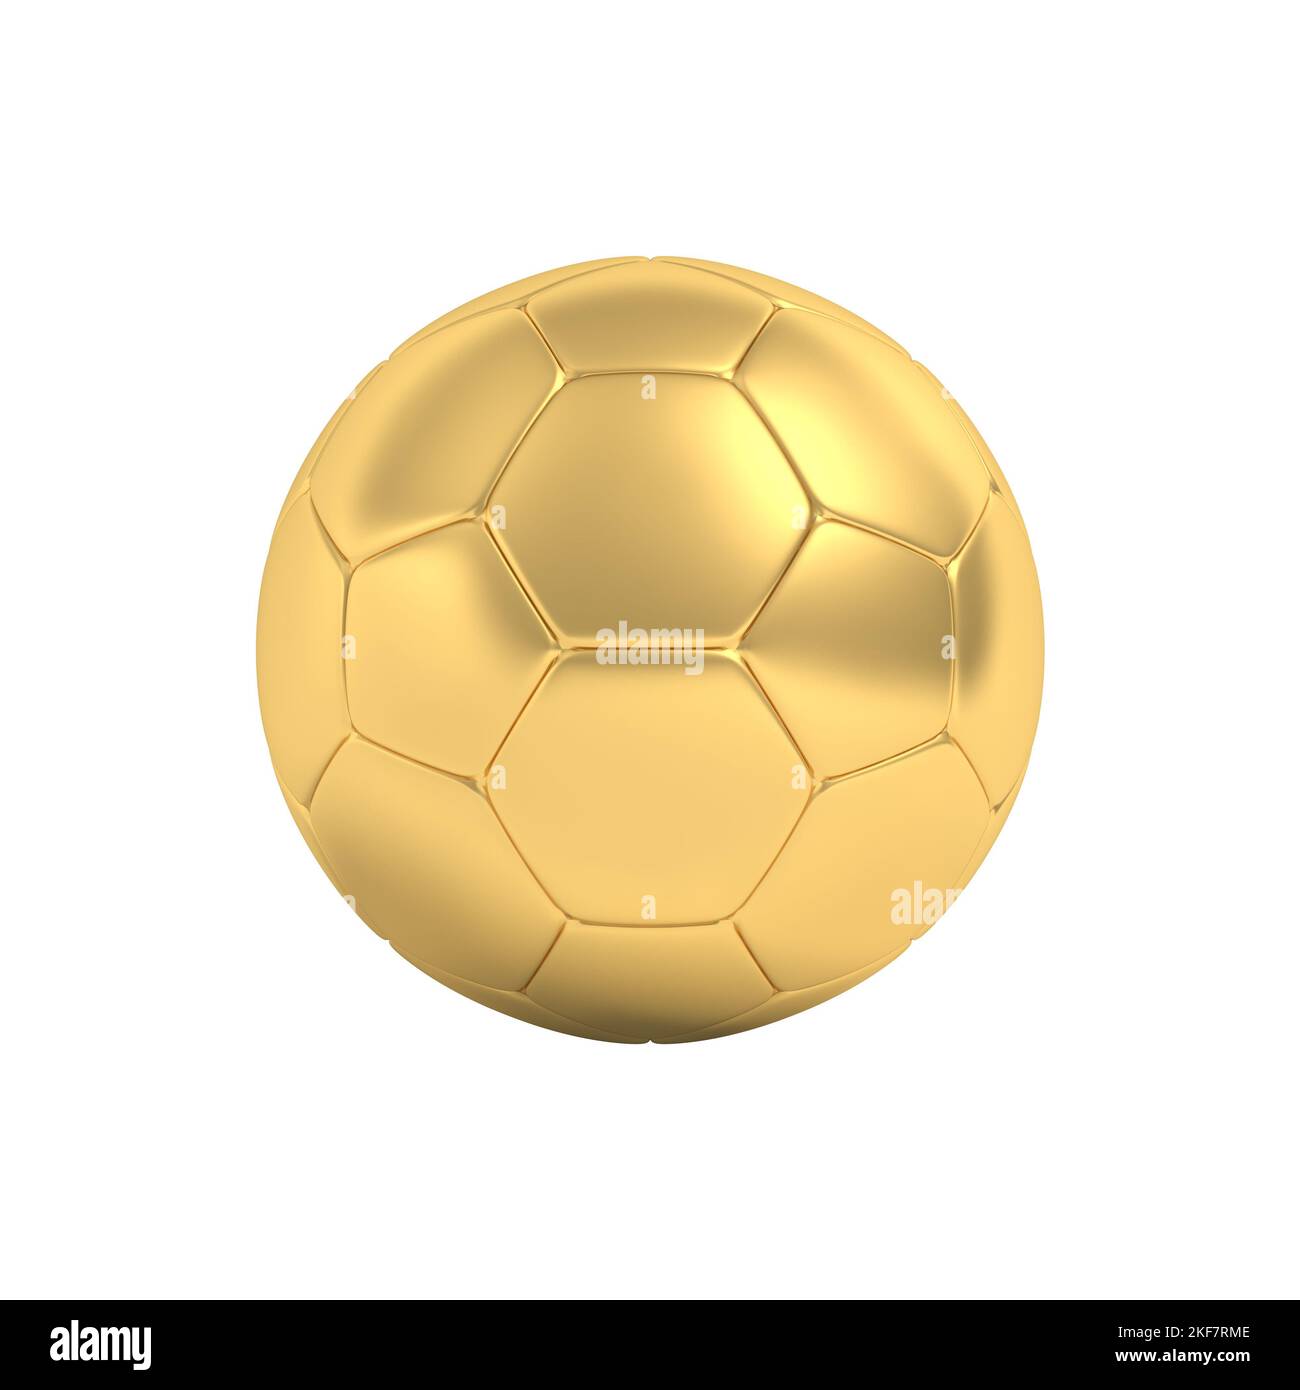 Ballon de foot doré Banque d'images détourées - Alamy